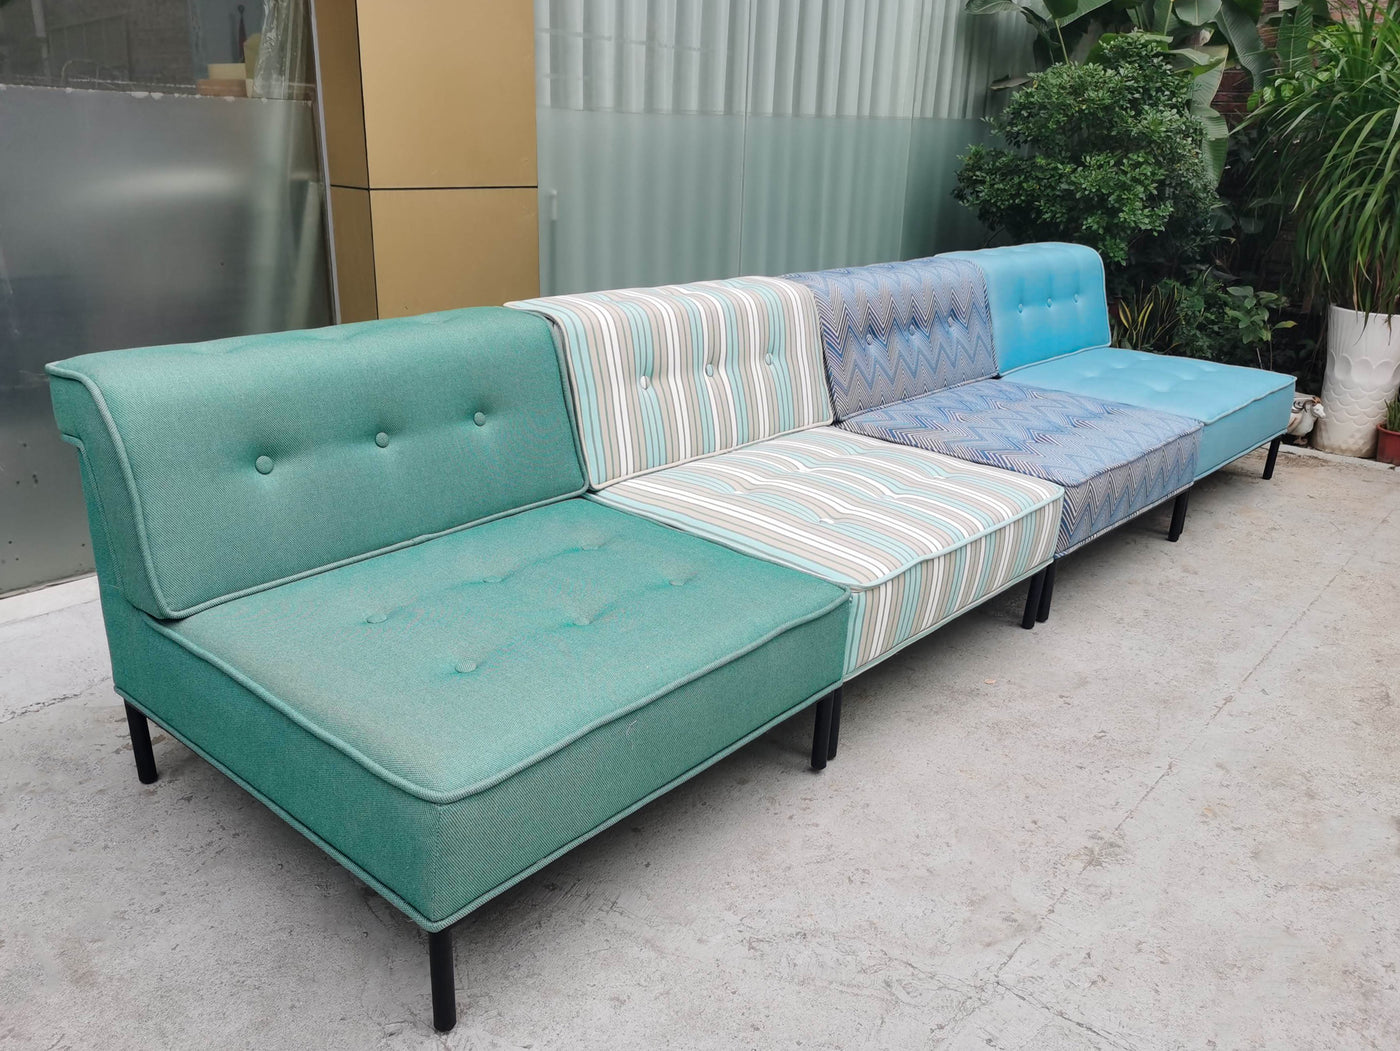 Outdoor Bohem sofa (Custom color)